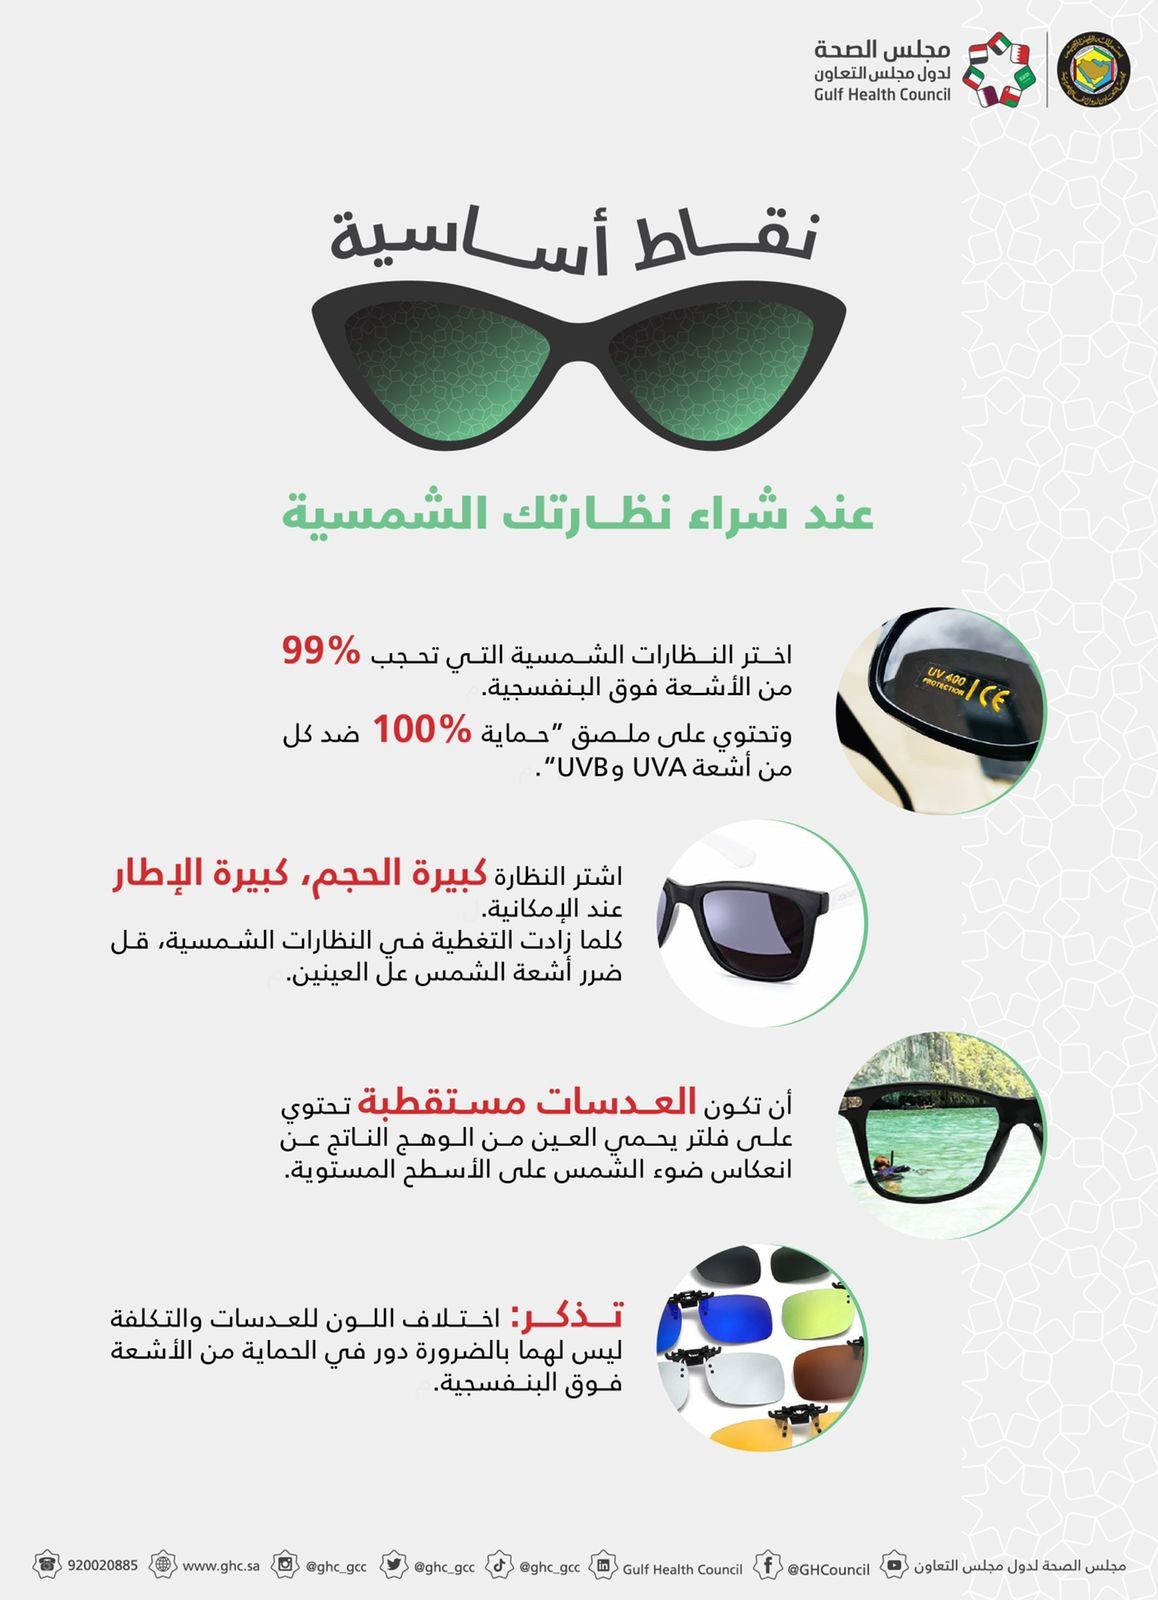 مجلس الصحة الخليجي يحدد شكل النظارة المناسبة لكل وجه